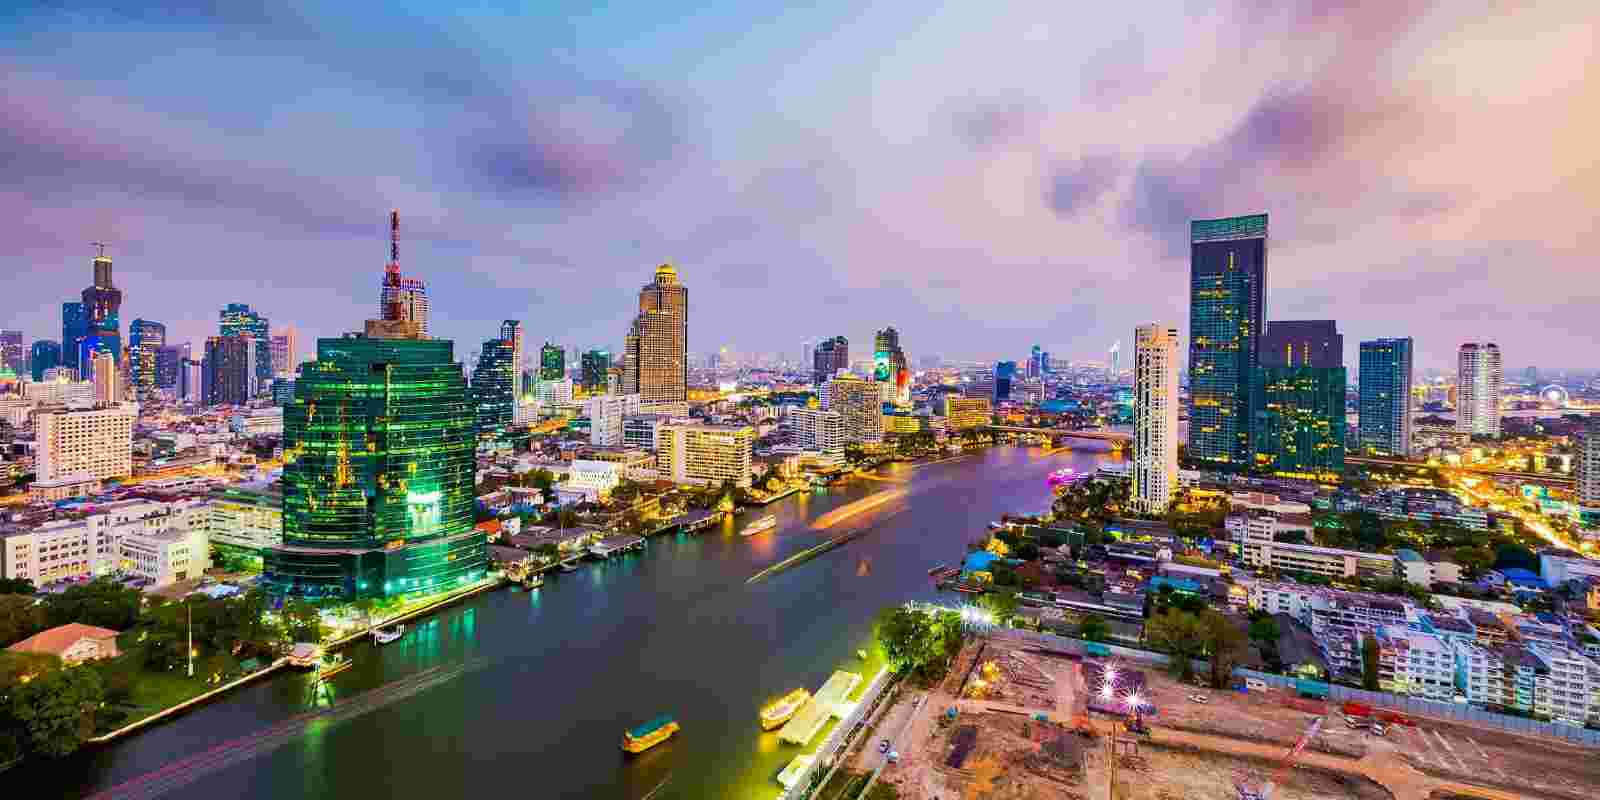 <h1>Hotels near Safari World in Bangkok</h1>